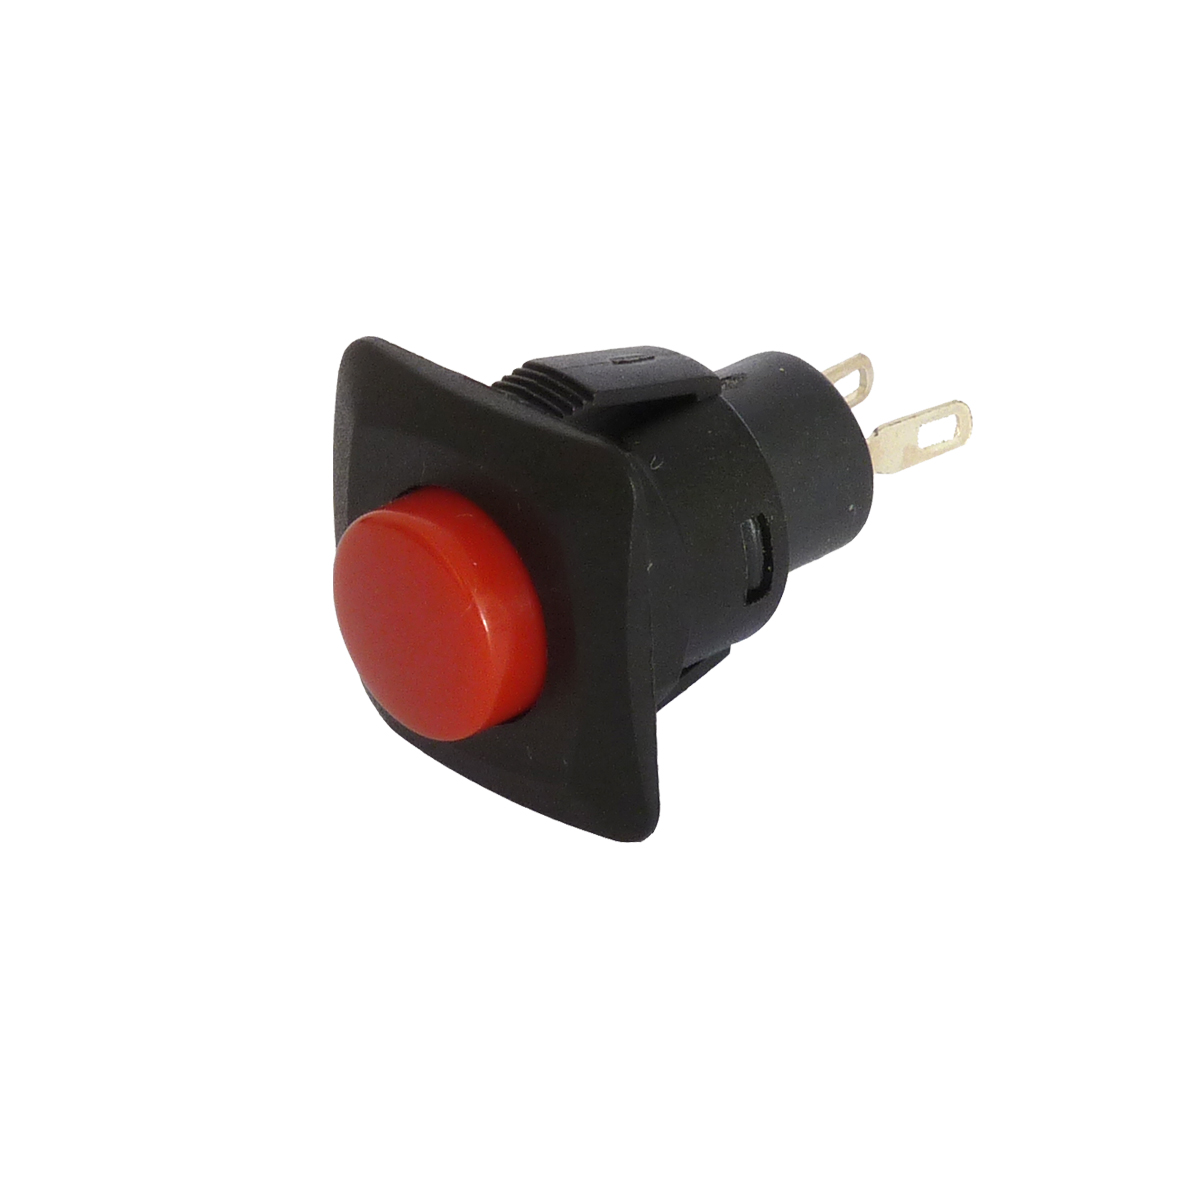 Interrupteur bouton poussoir étanche 16mm 220V 2A 5 broches avec voyant  rouge